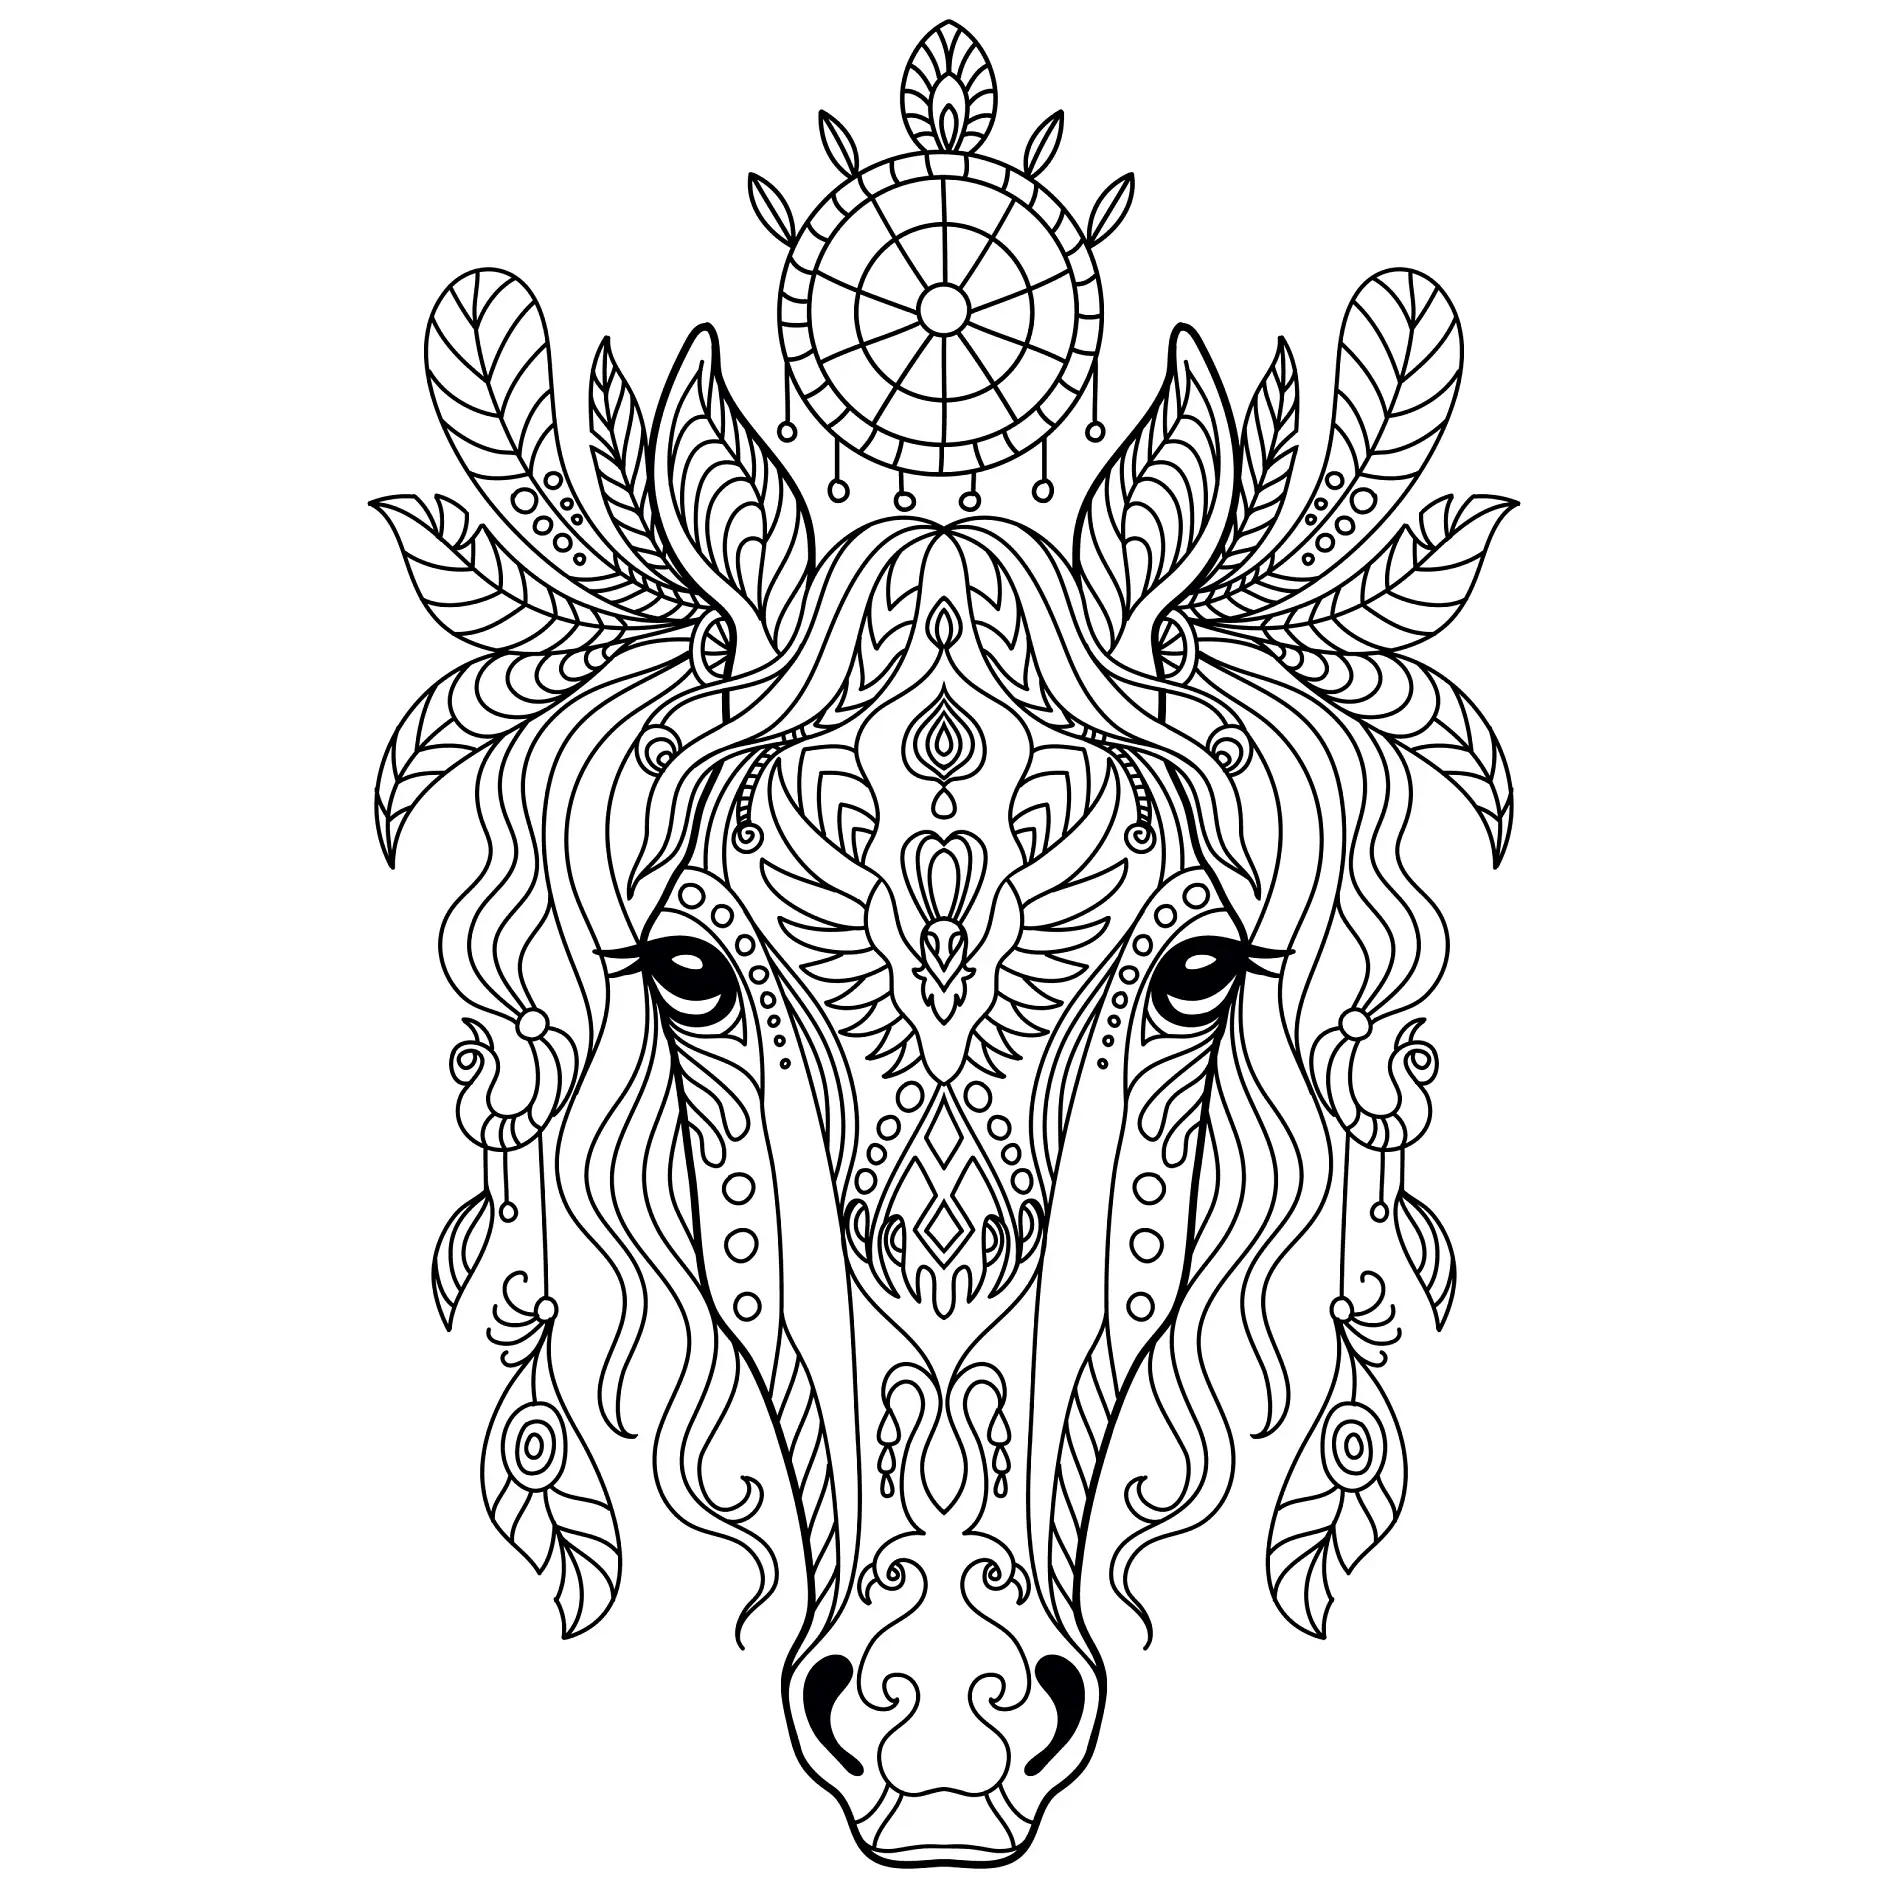 Ausmalbild Mandala Pferdekopf mit detaillierten Ornamenten